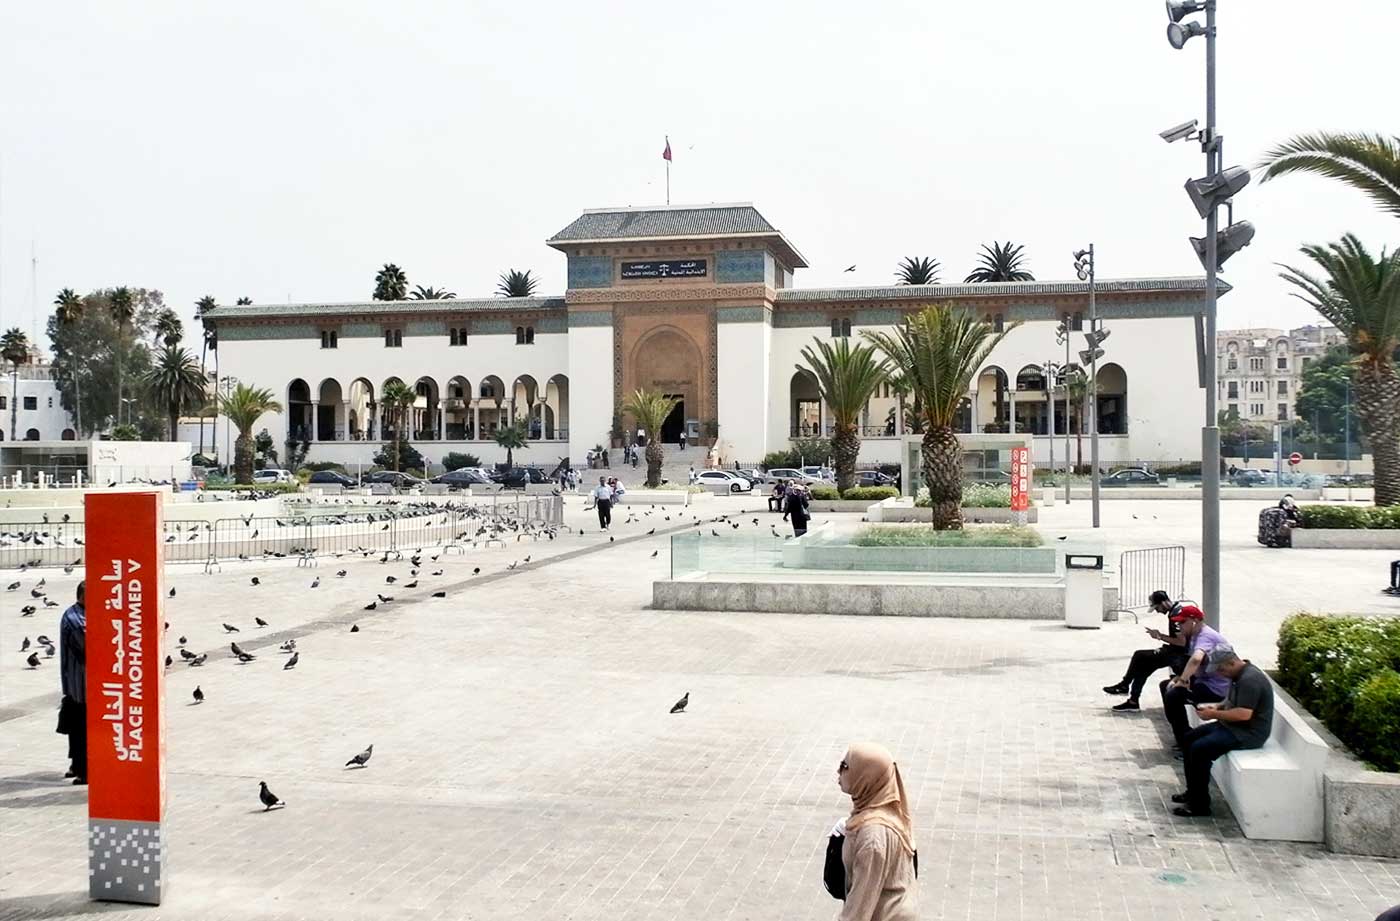 Place Mohammed V